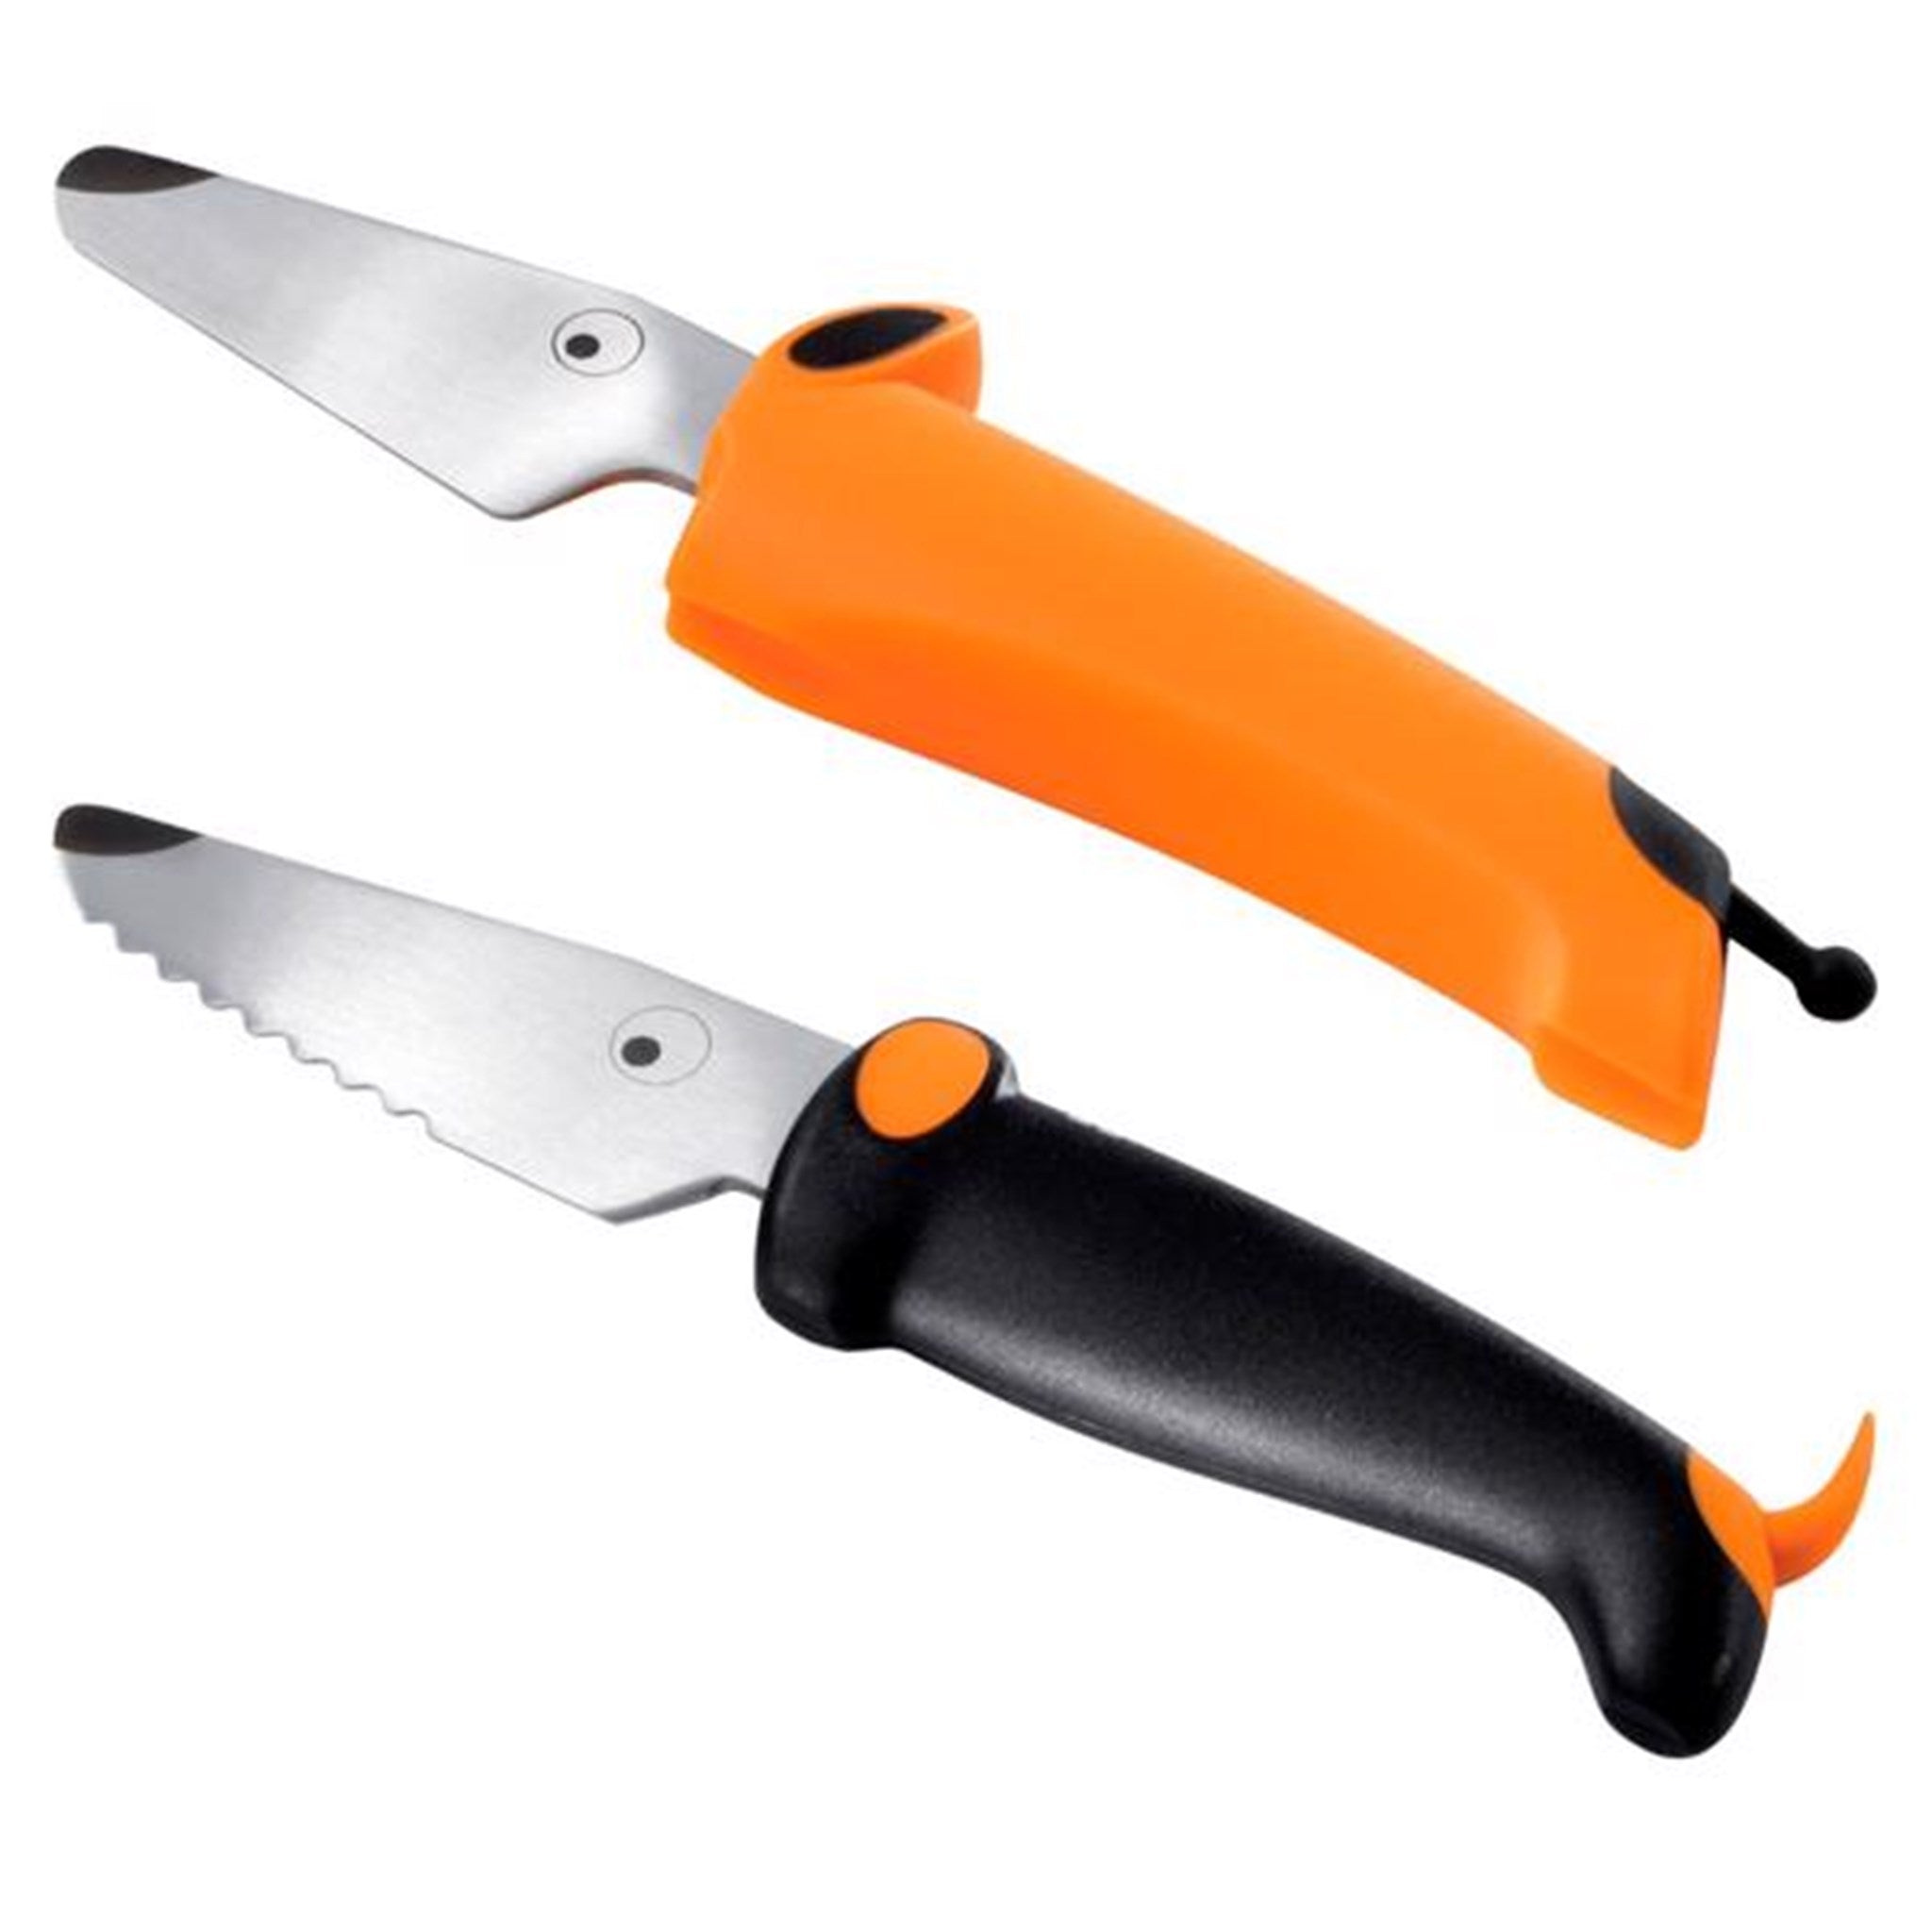 Kinderkitchen Knife Set Orange/Black